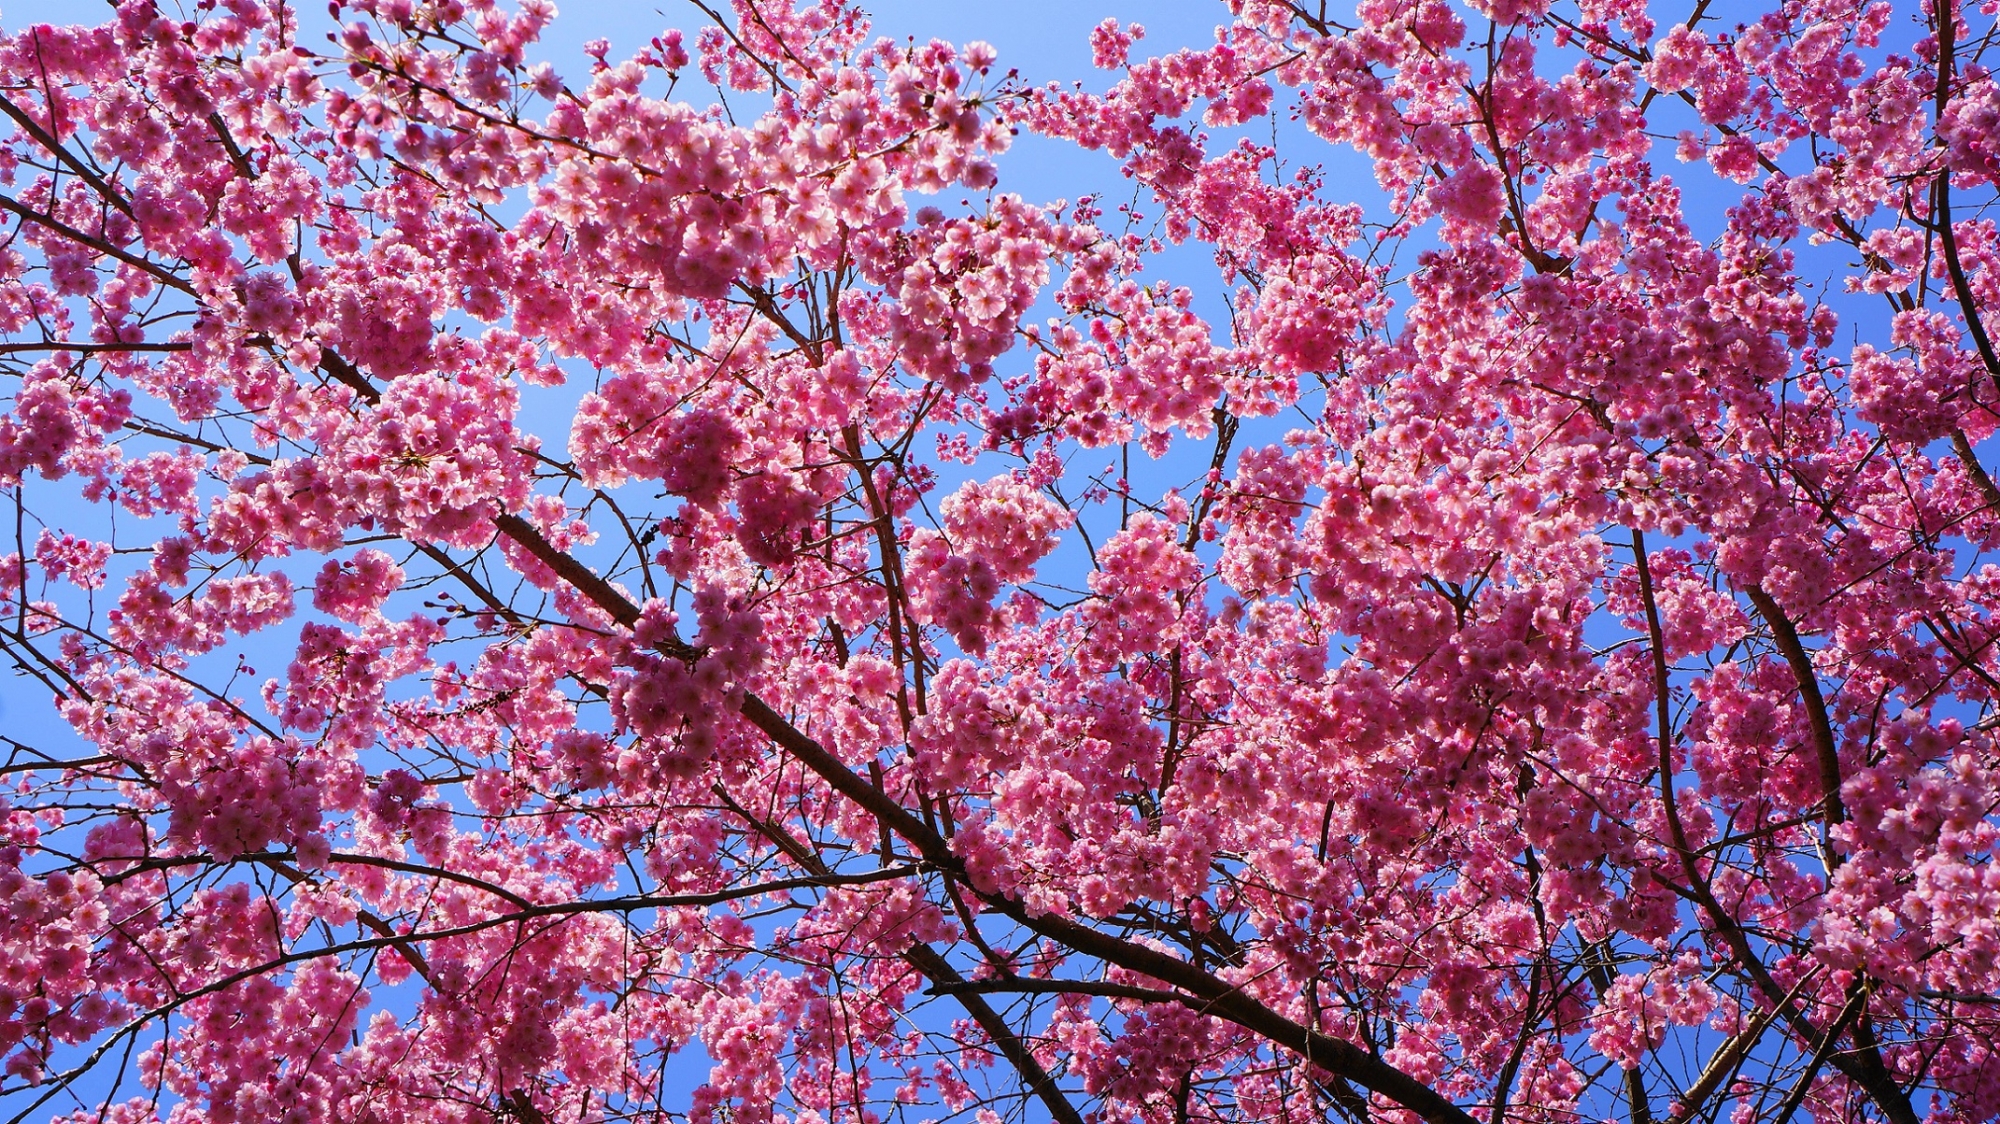 太陽をいっぱいに浴びて煌びやかに輝く桜